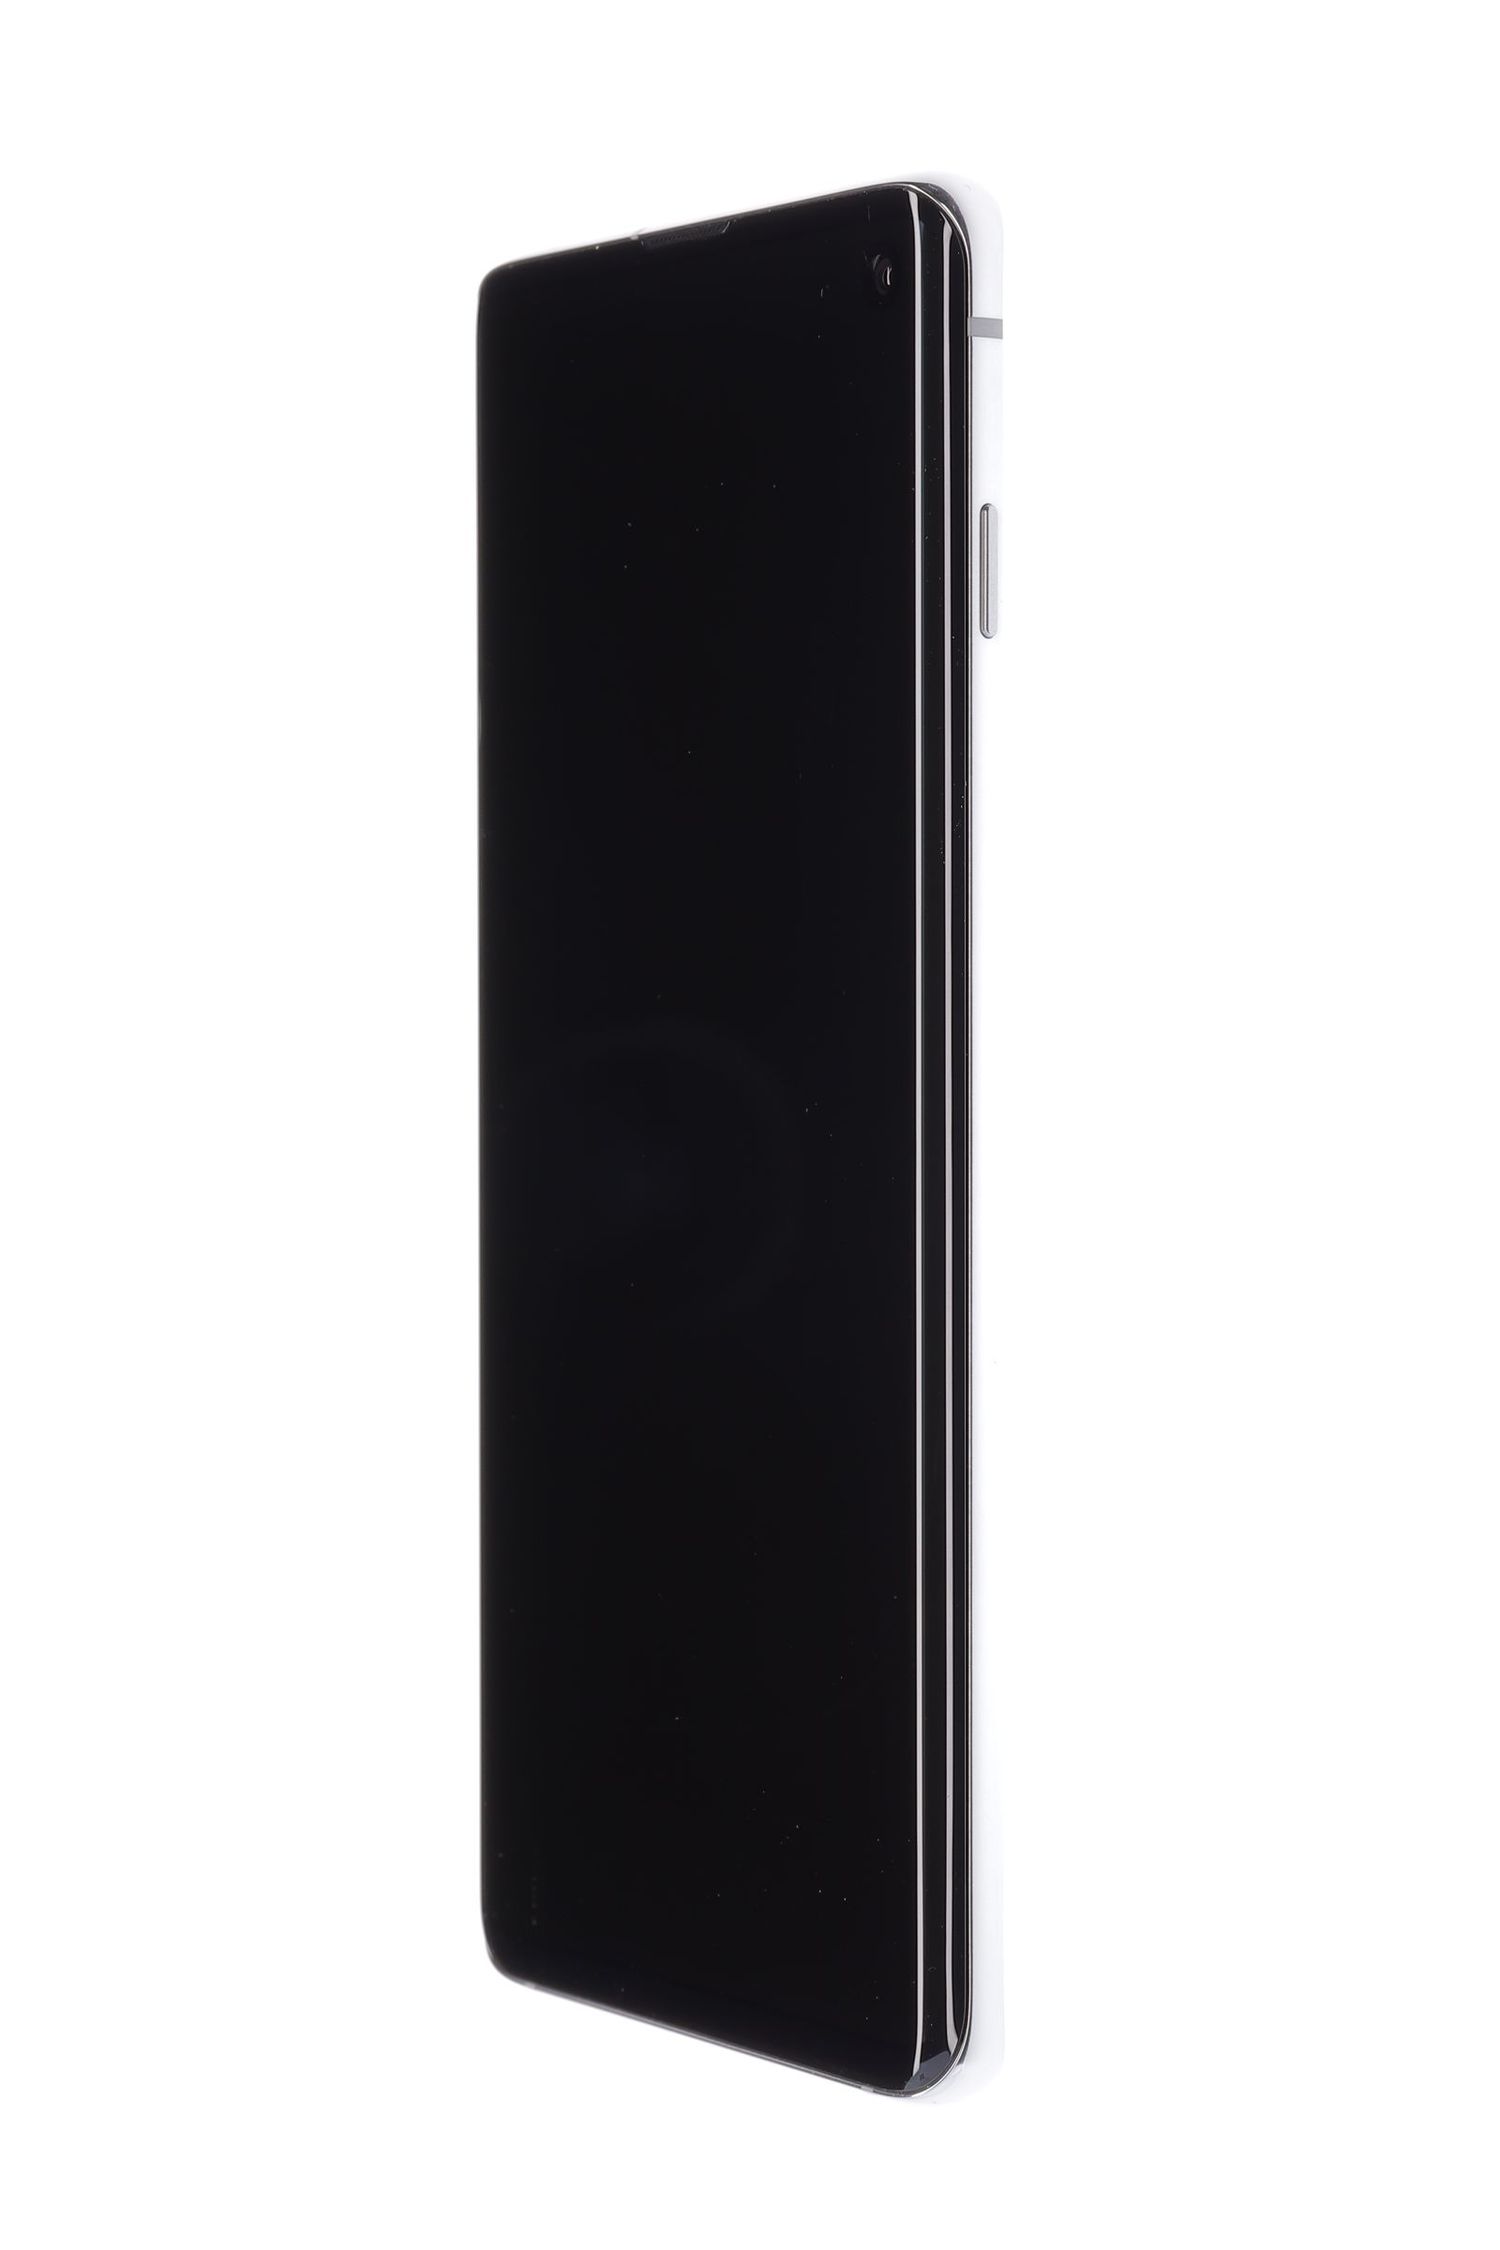 Κινητό τηλέφωνο Samsung Galaxy S10 Dual Sim, Prism White, 128 GB, Foarte Bun